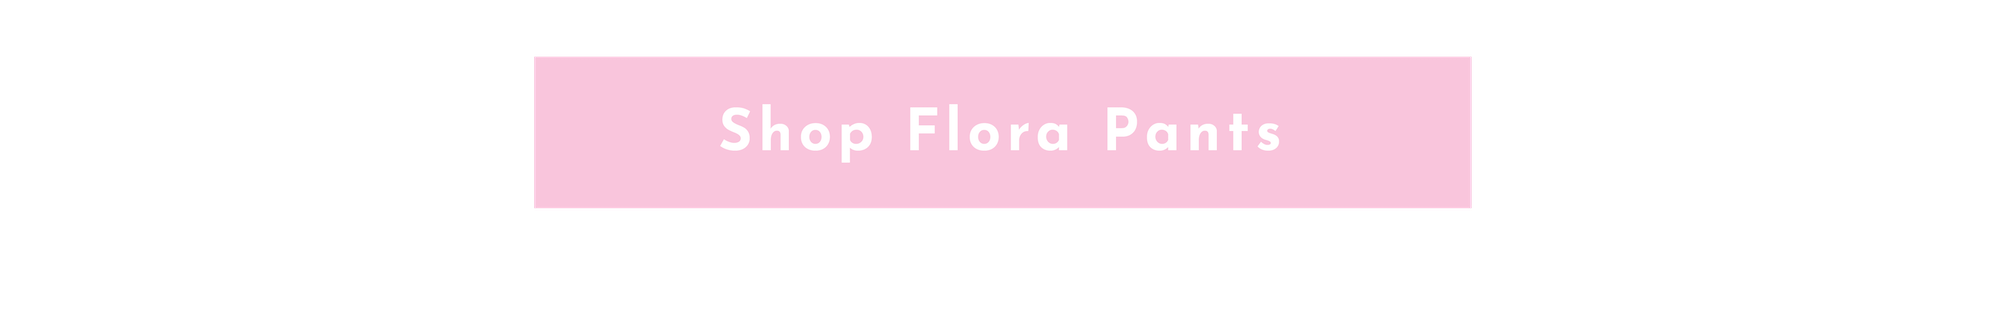 SHOP FLORA